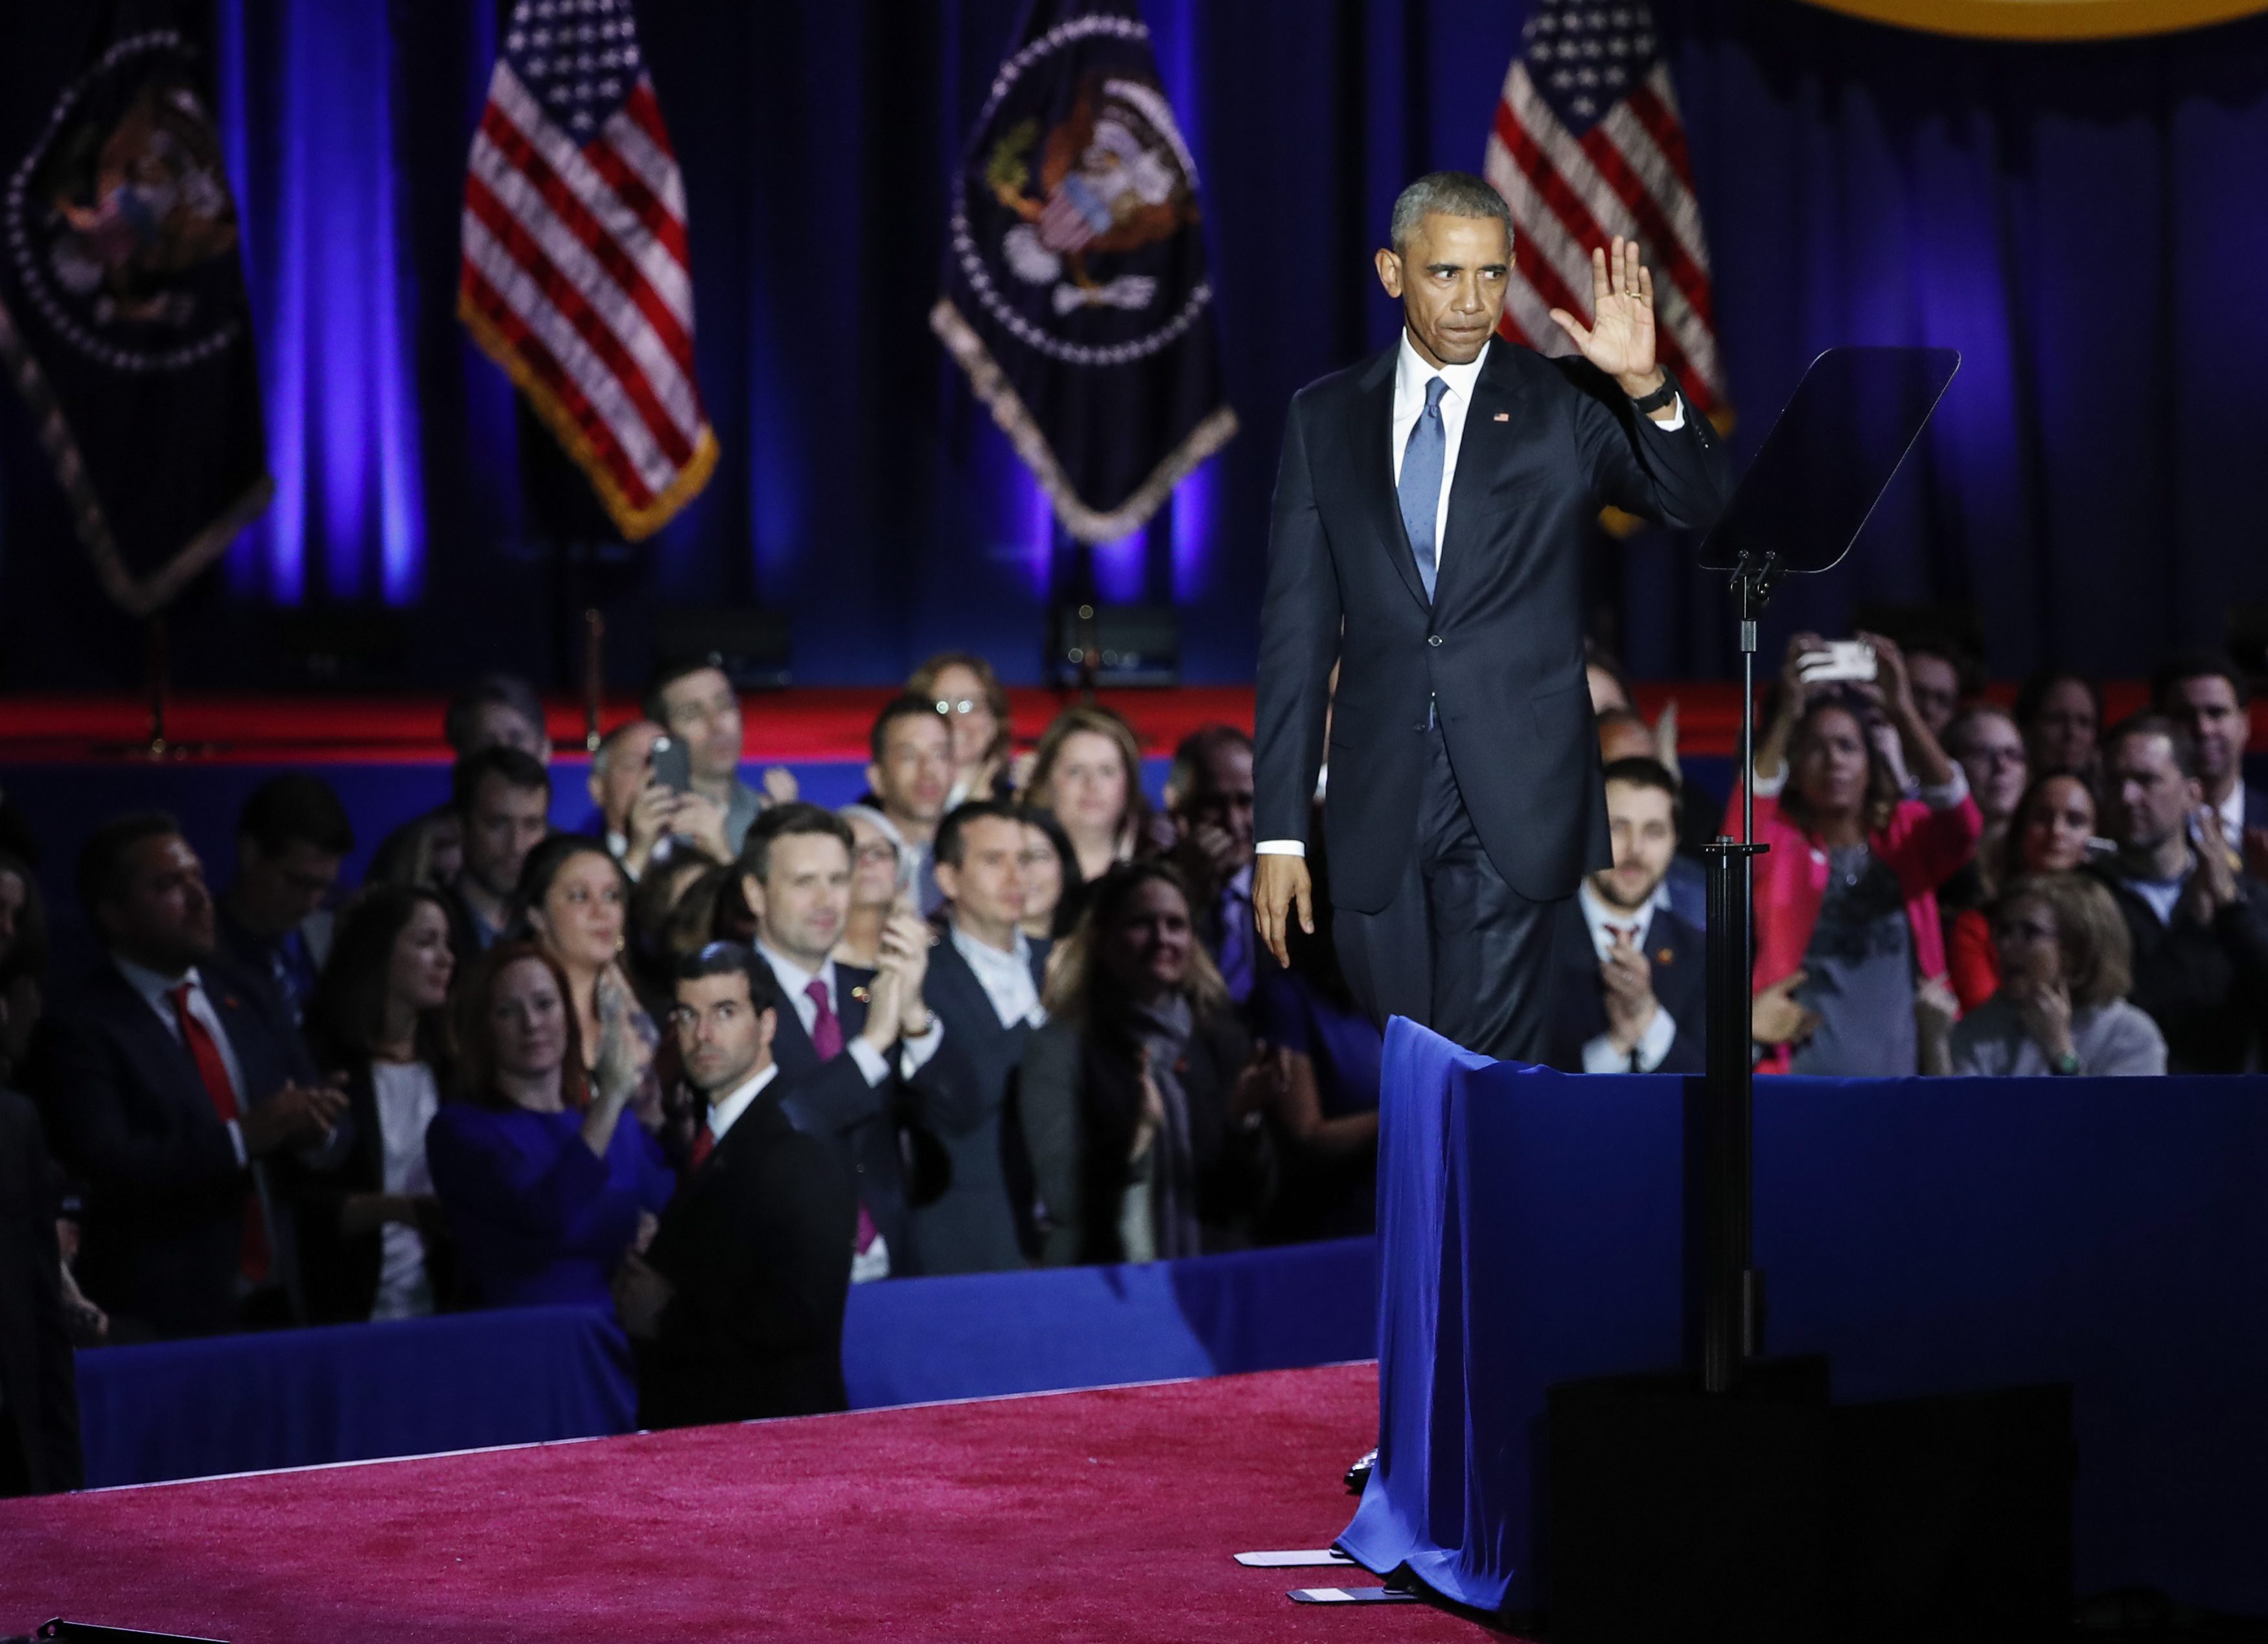 Барак Обама изнесе своята последна реч като президент на САЩ пред хиляди хора в Чикаго - градът, в който той отпразнува издигането си във властта преди осем години. На моменти гласът му отразяваше емоциите. Той си спомни както пораженията, така и победите.